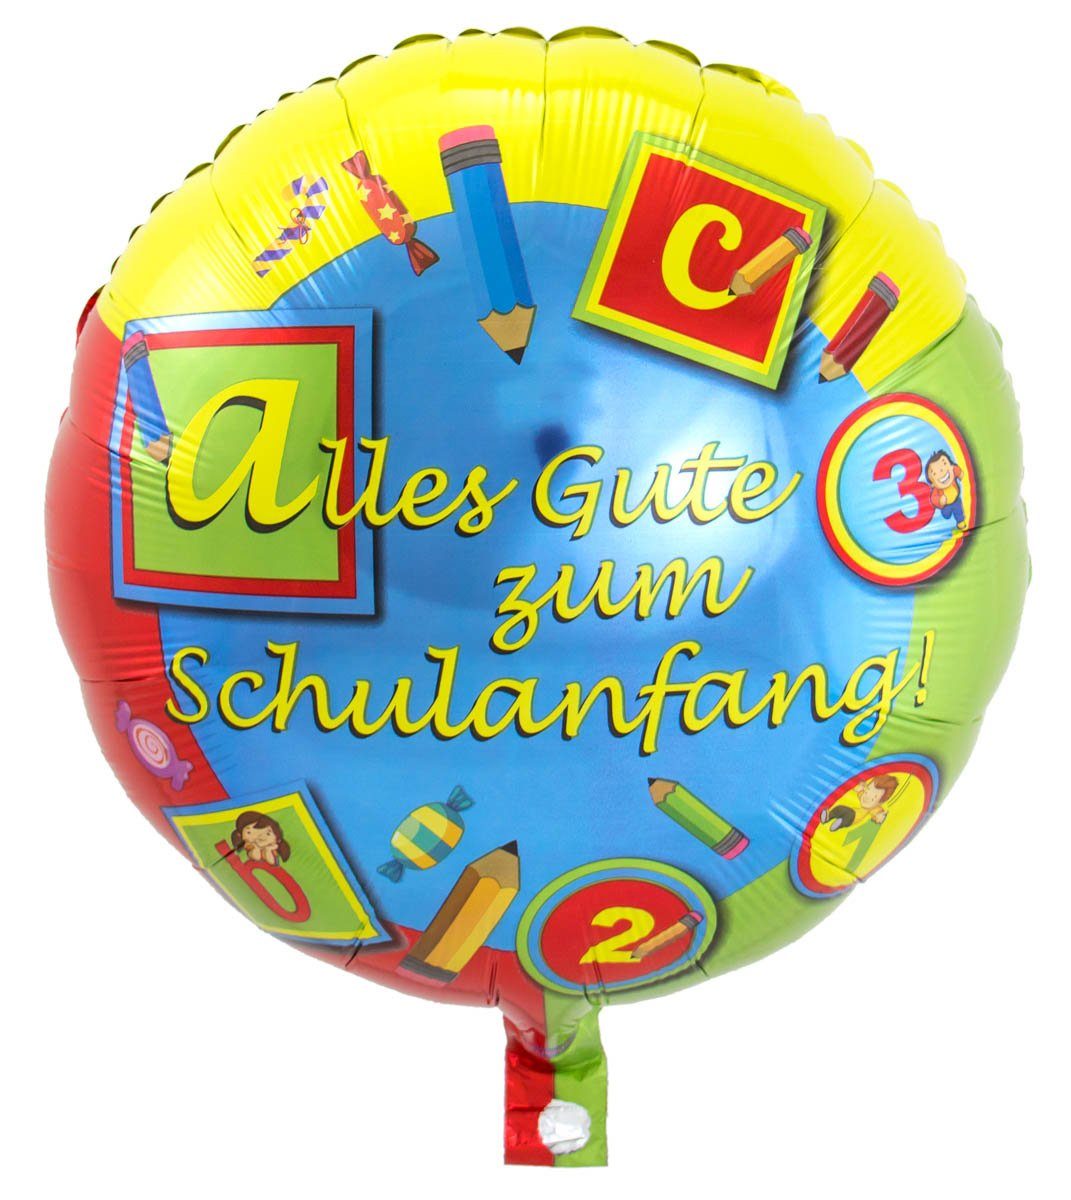 zum Folienballon Folat Durchmesser Alles Gute Schulanfang 45cm Schulan FOLAT Hängedekoration